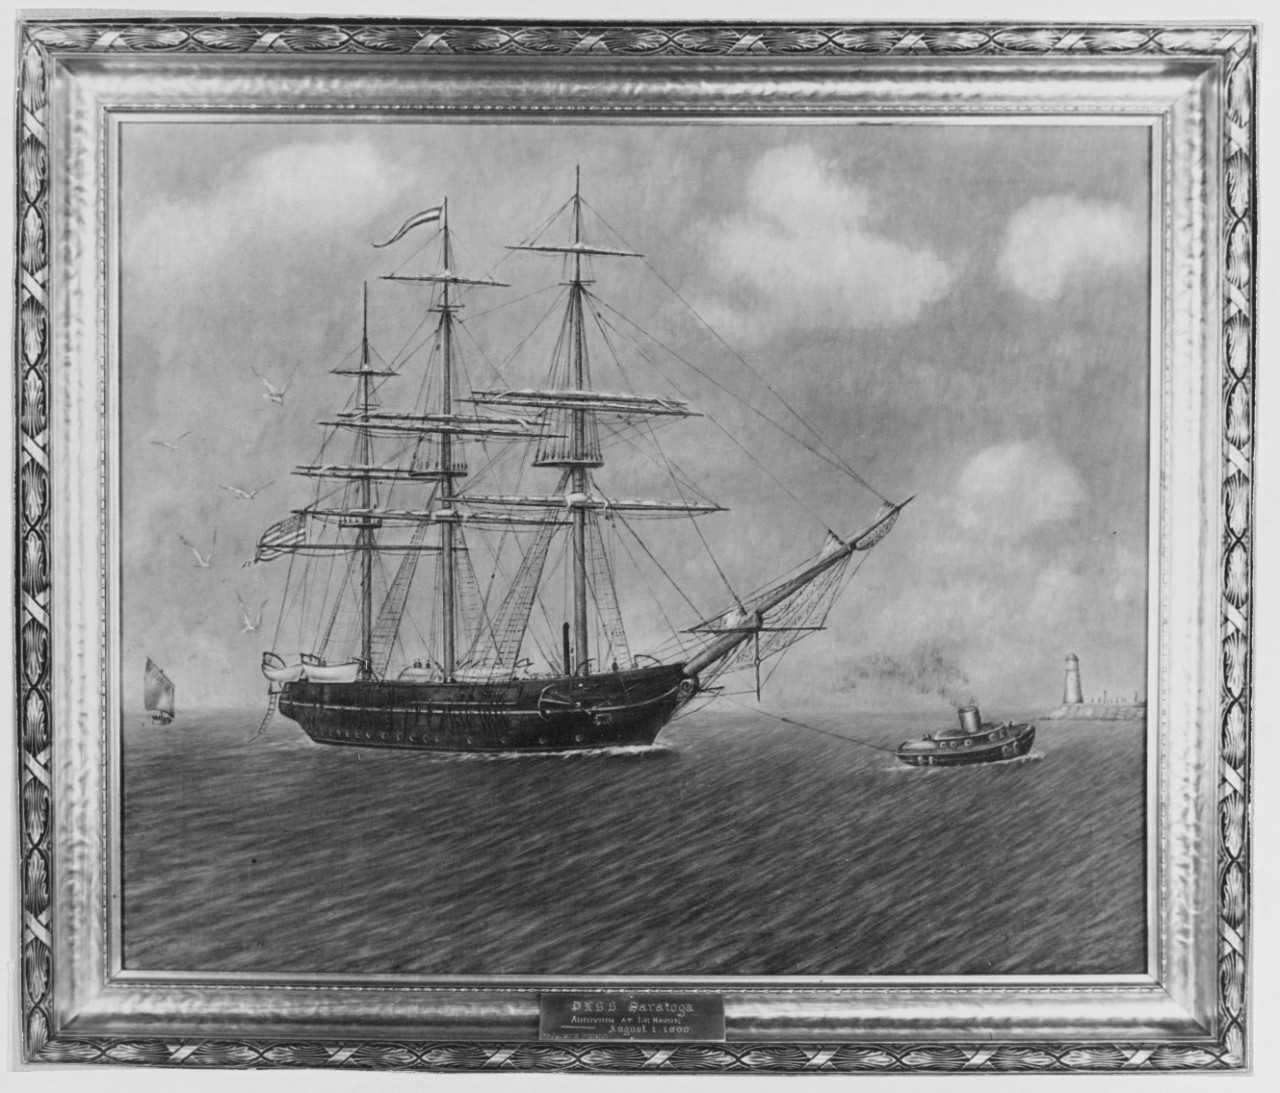 USS SARATOGA (1842-1907)